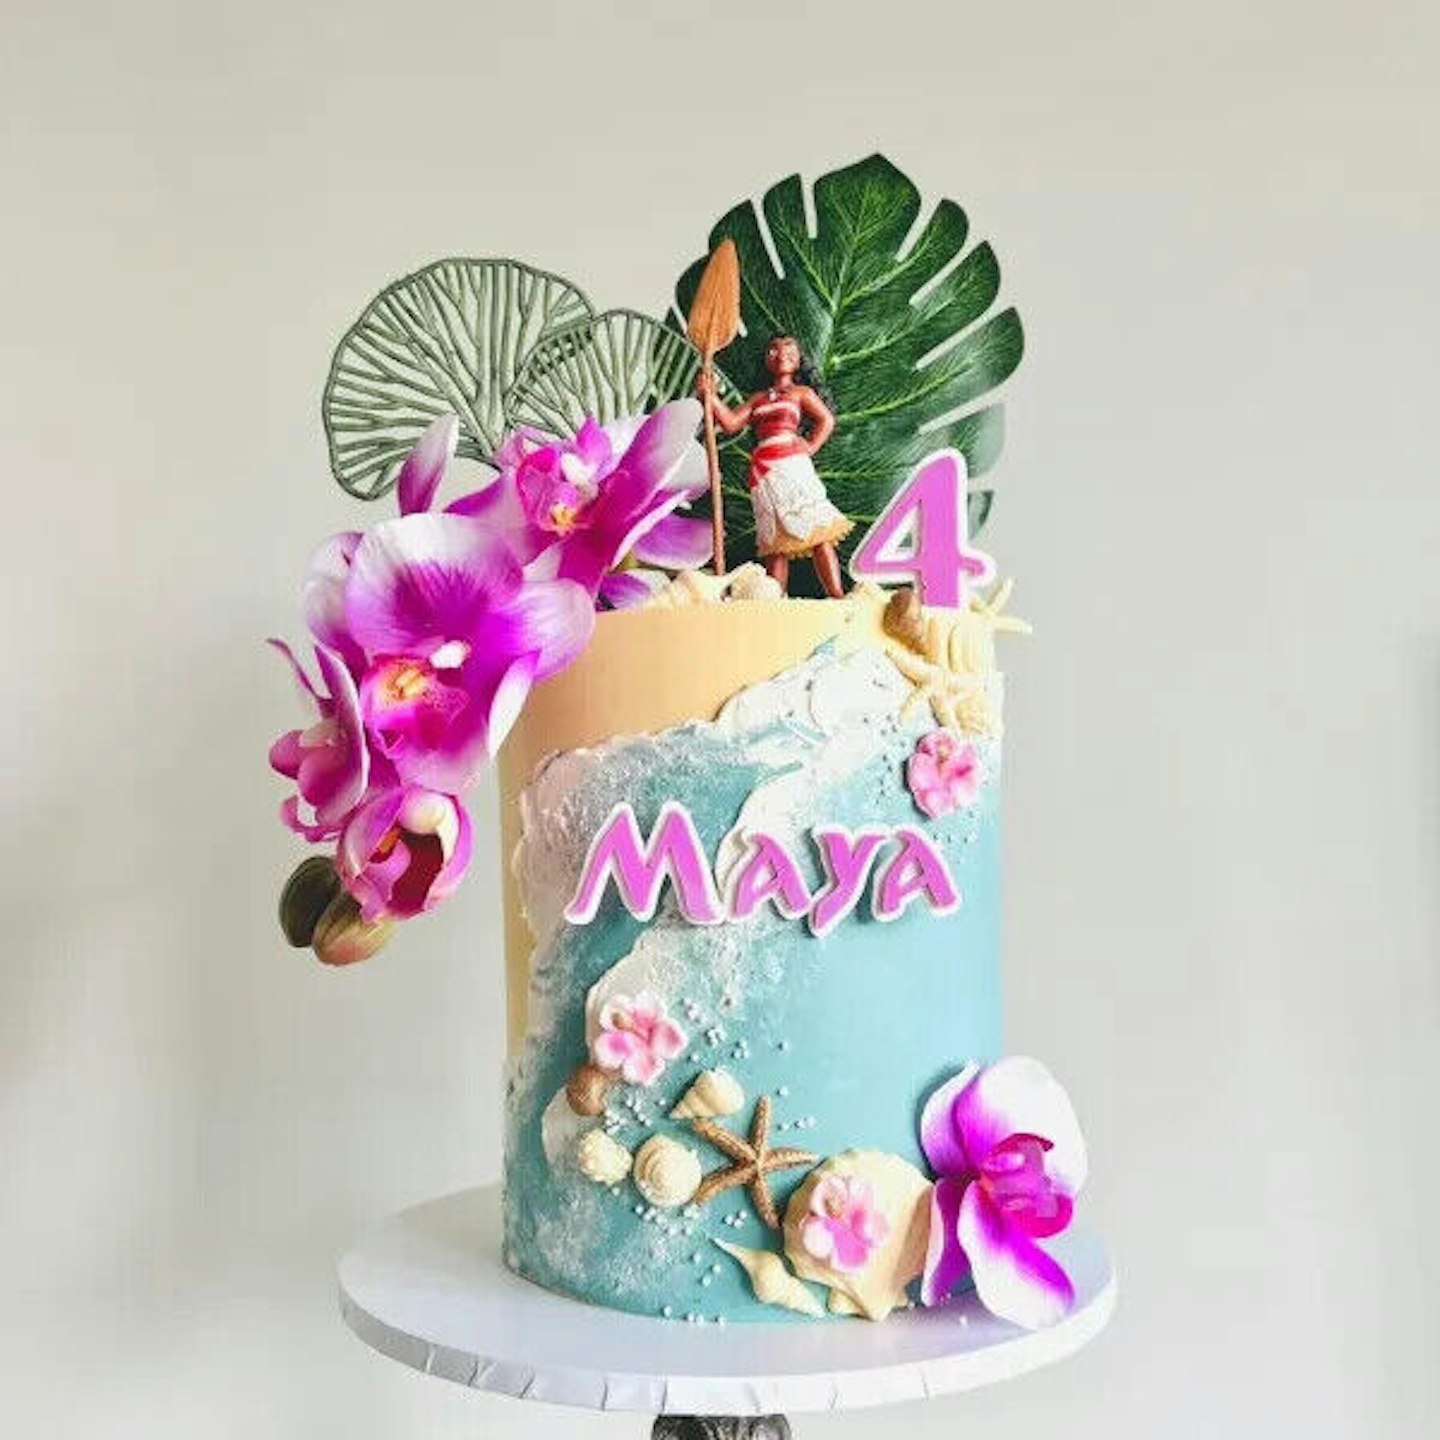 Moana birthday cake